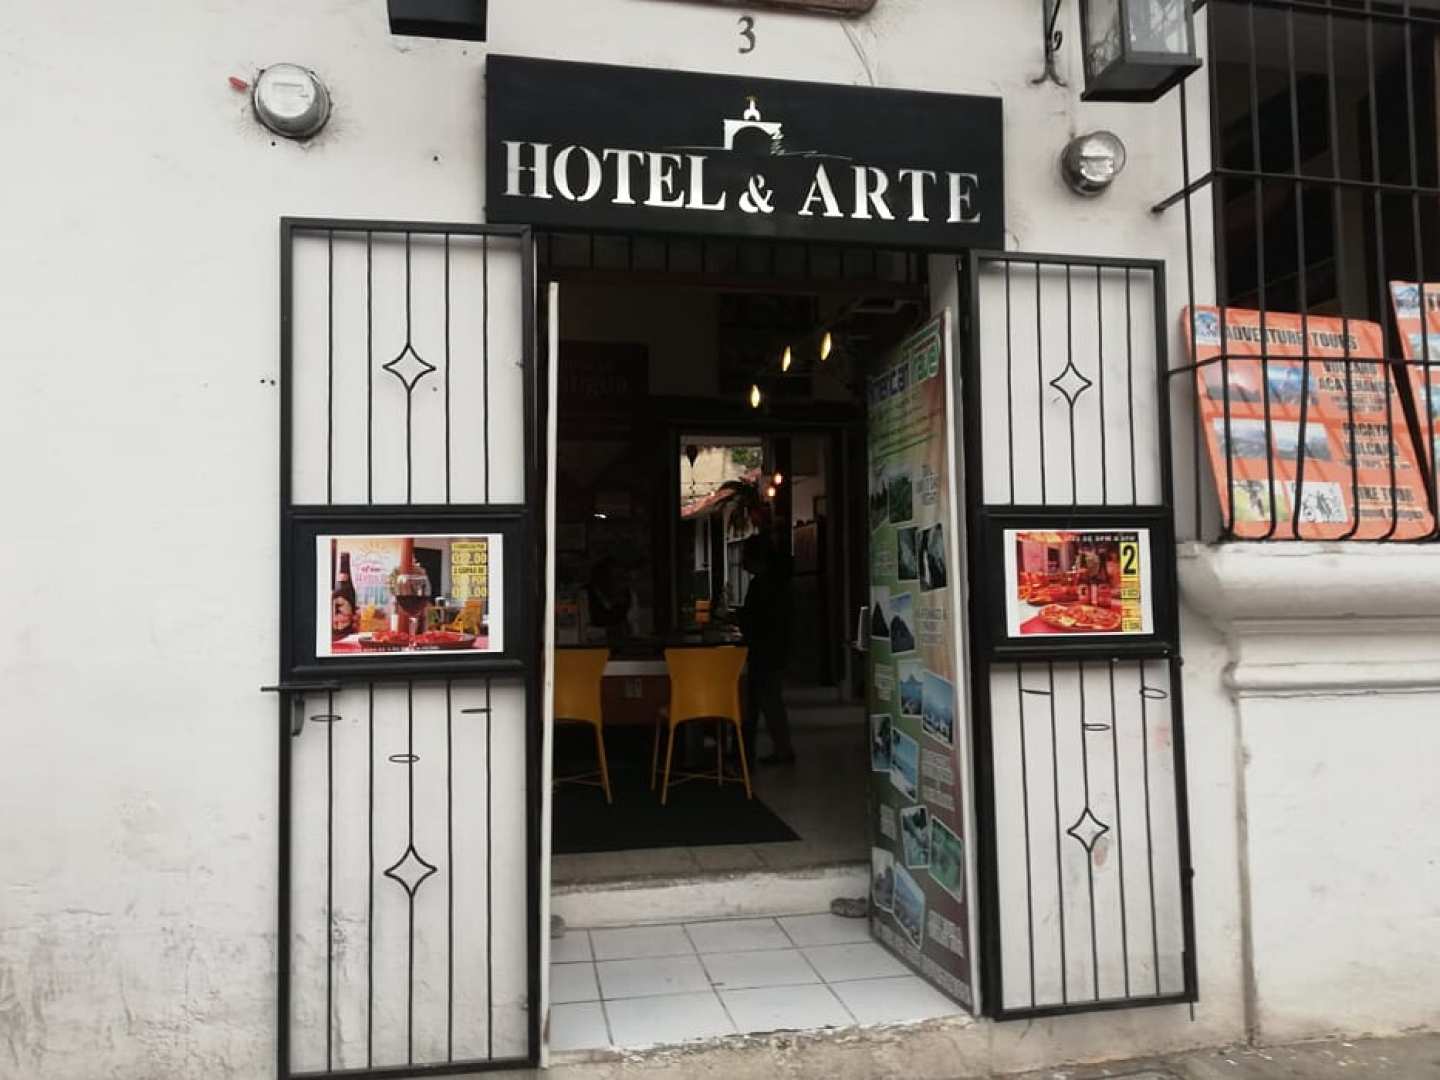 Hotel y Arte